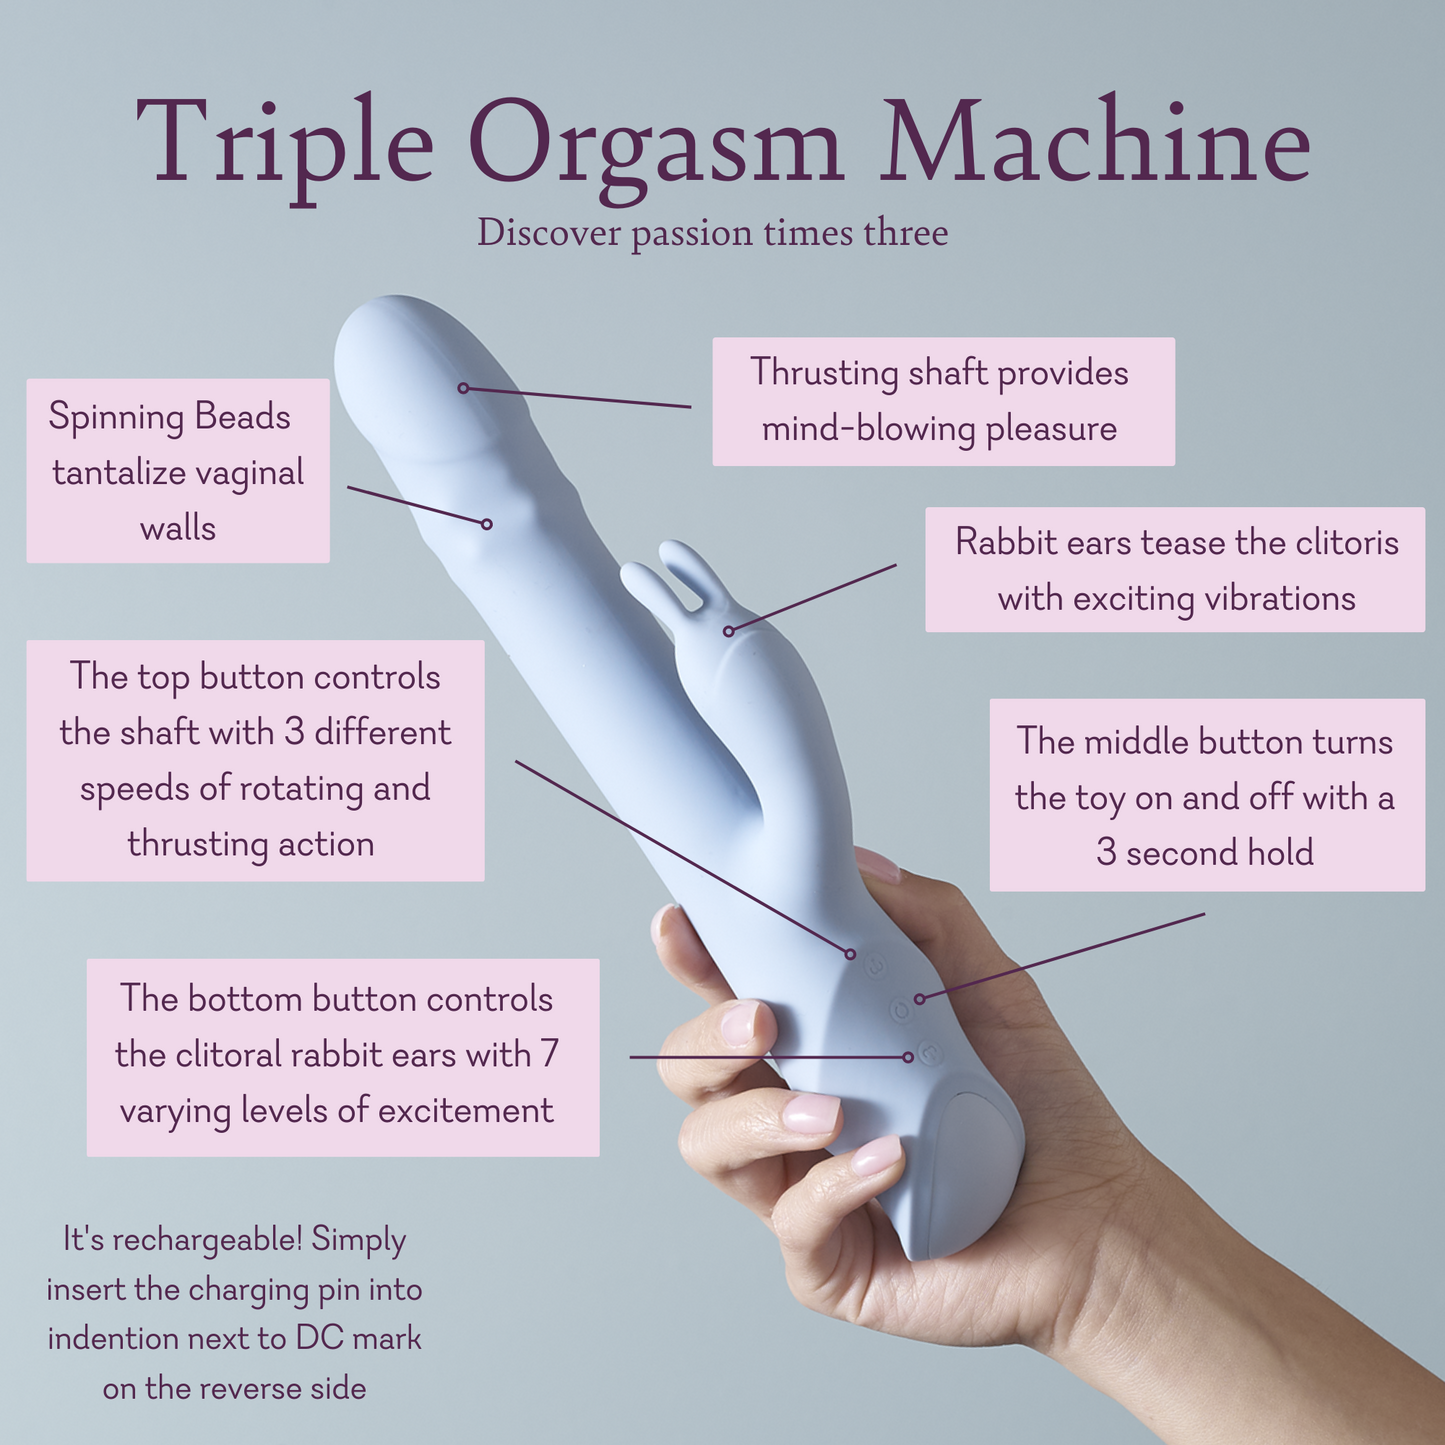 Máquina de triple orgasmo